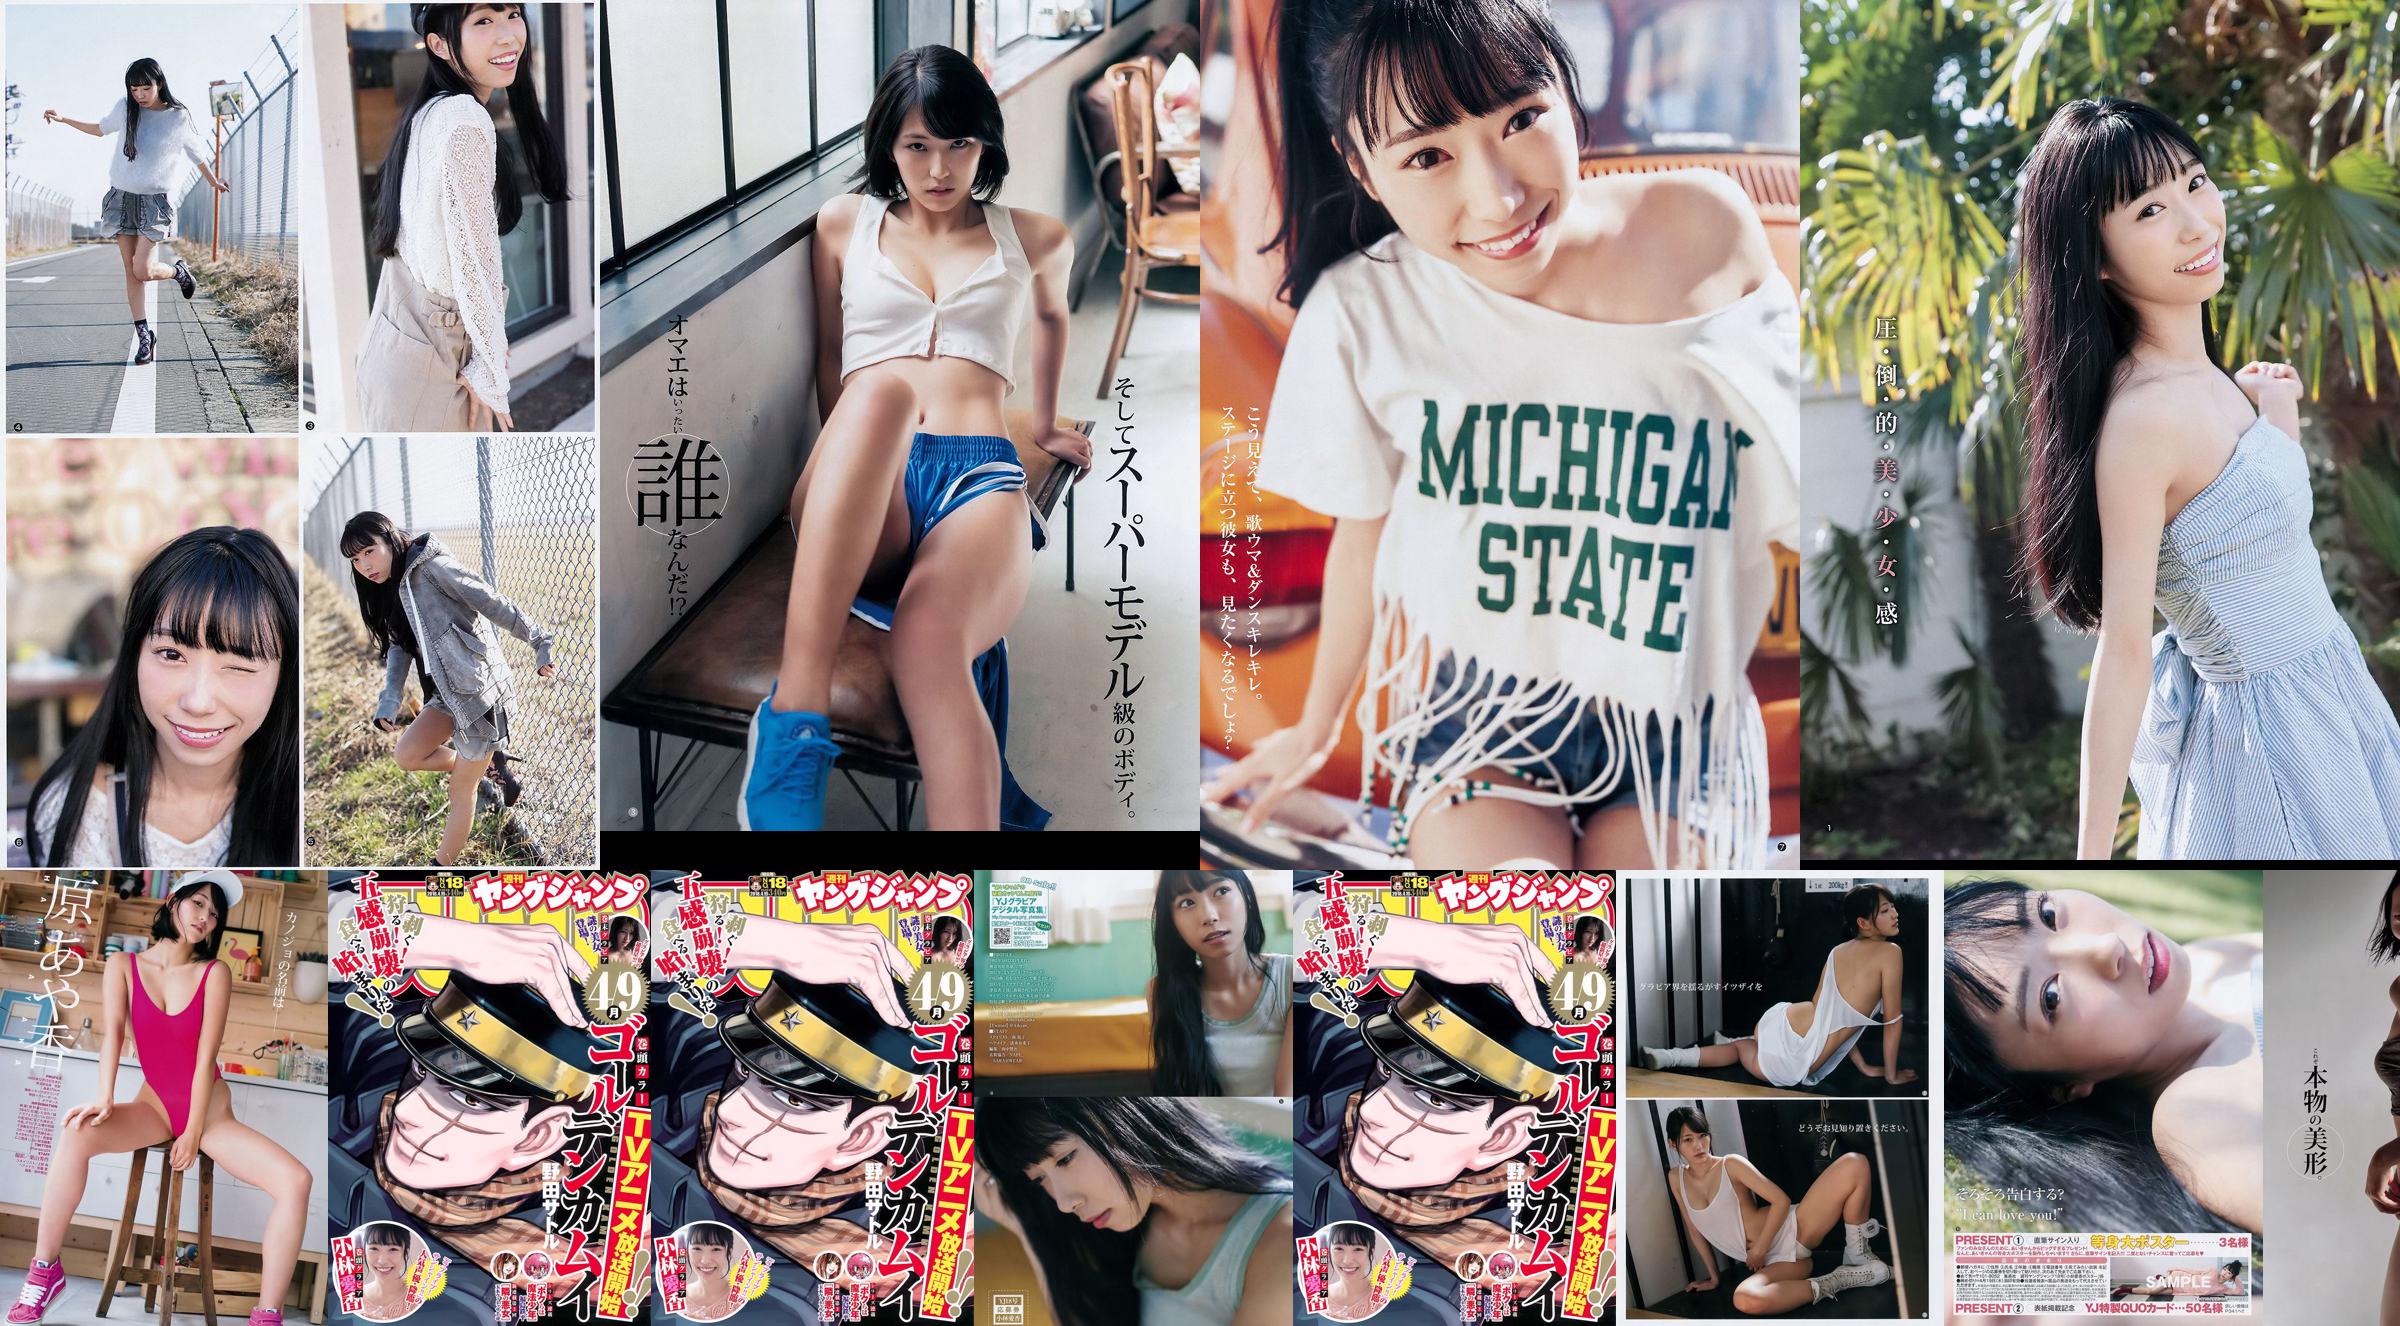 Aika Kobayashi Ayaka Hara [Weekly Young Jump] 2018 No.18 Photograph No.b73cdd Page 1